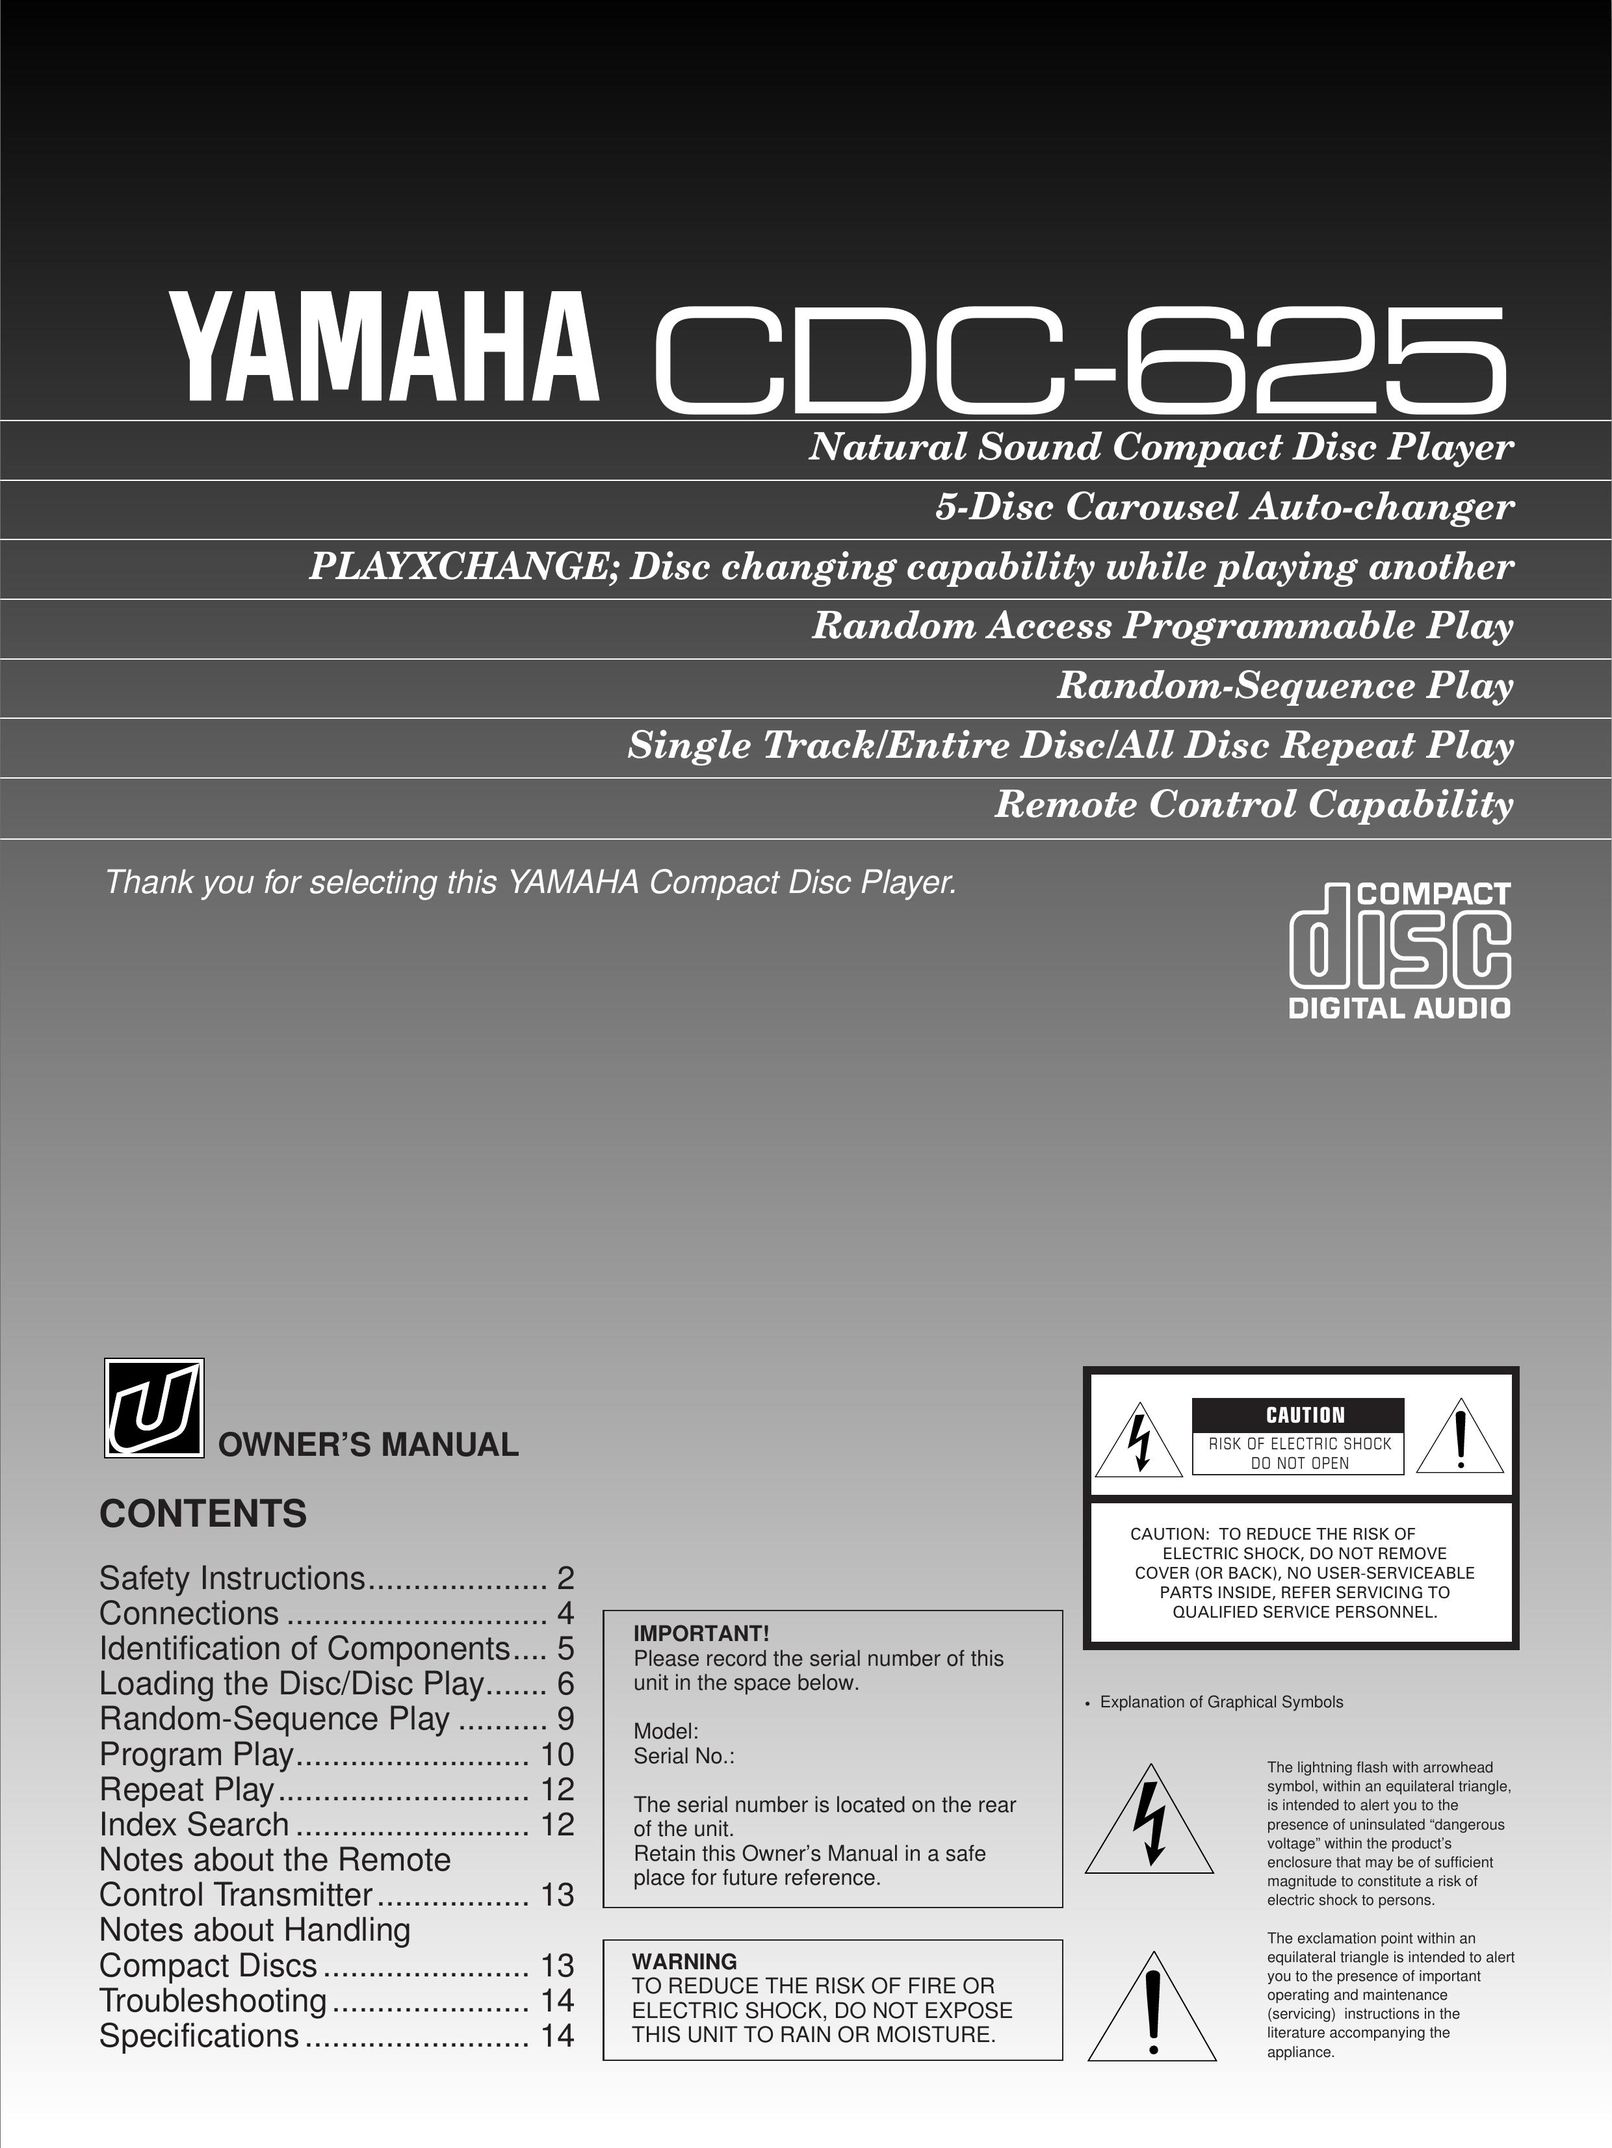 Yamaha CDC-625 CD Player User Manual